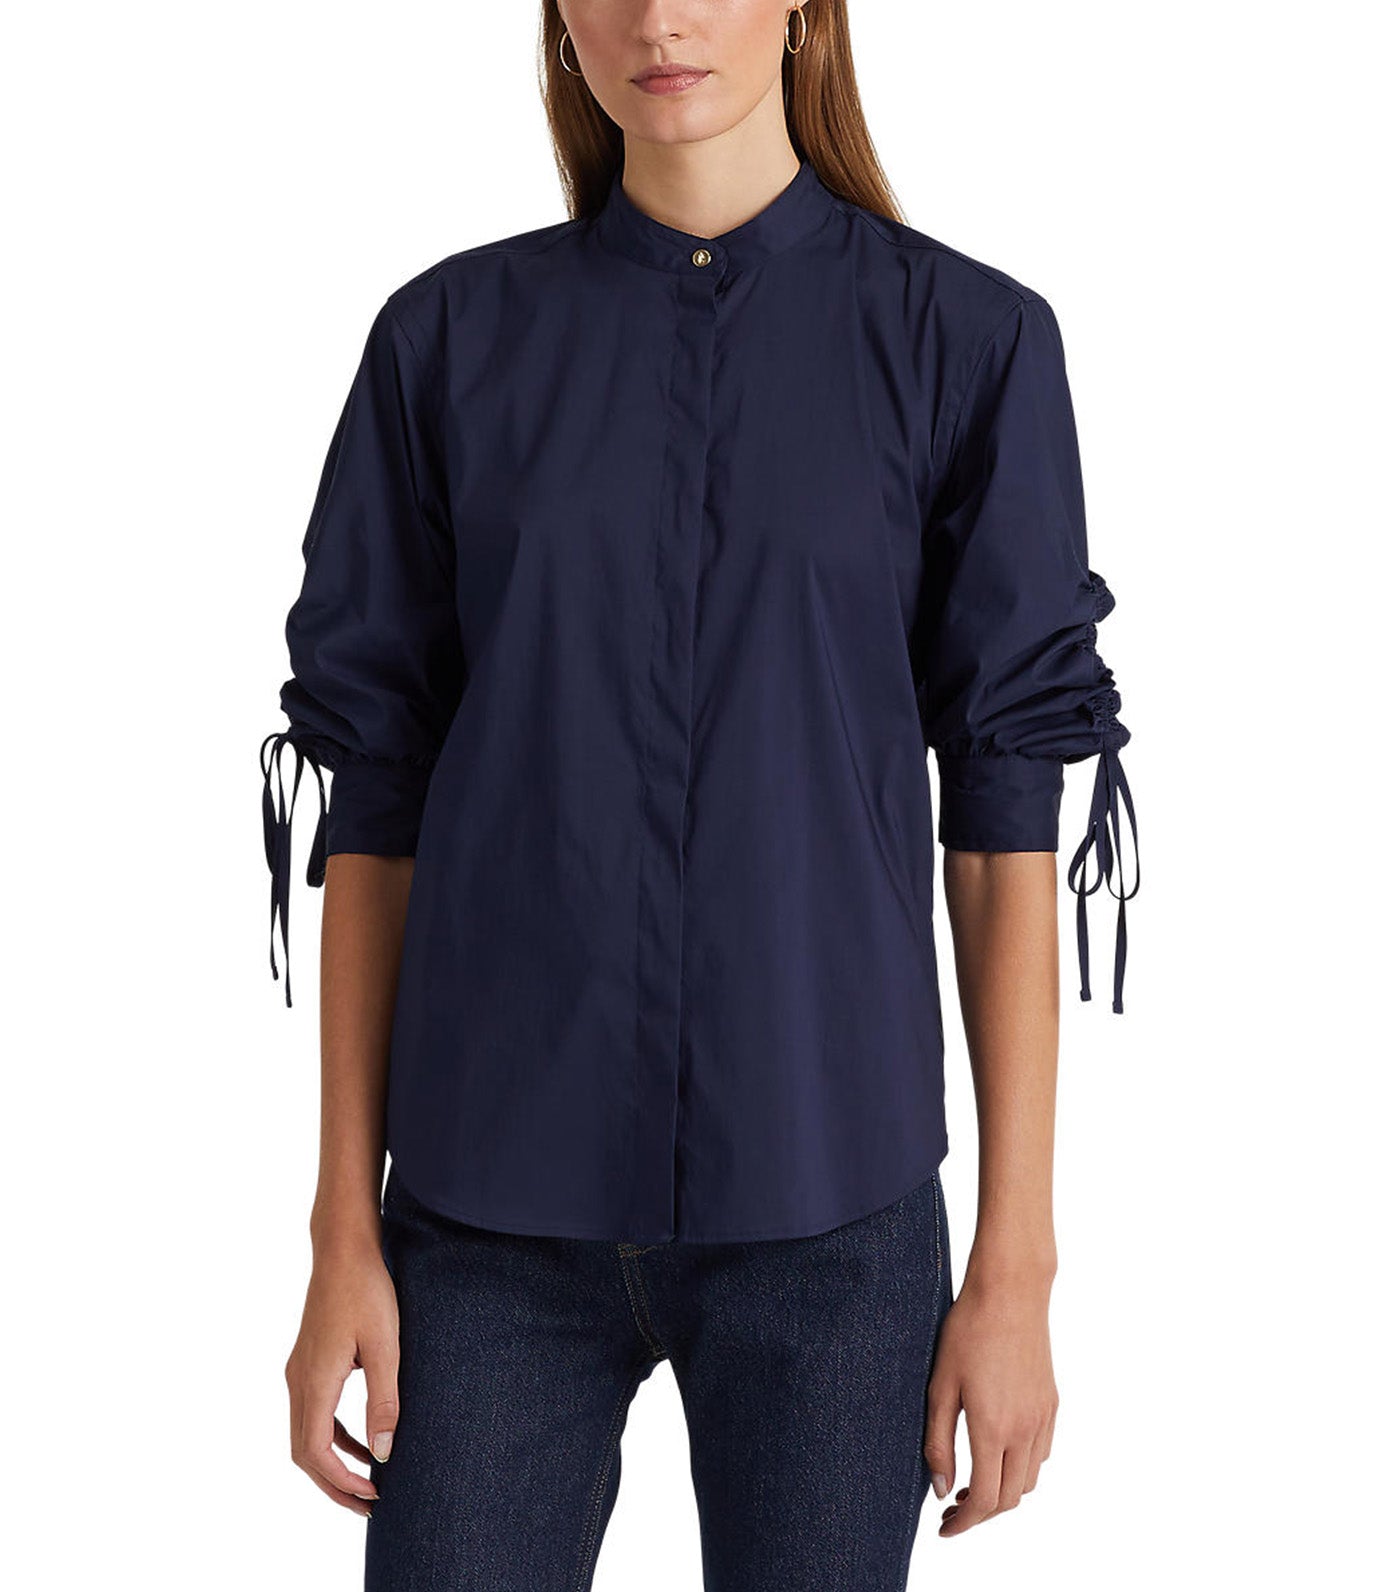 Women's Cotton-Blend Shirt Navy